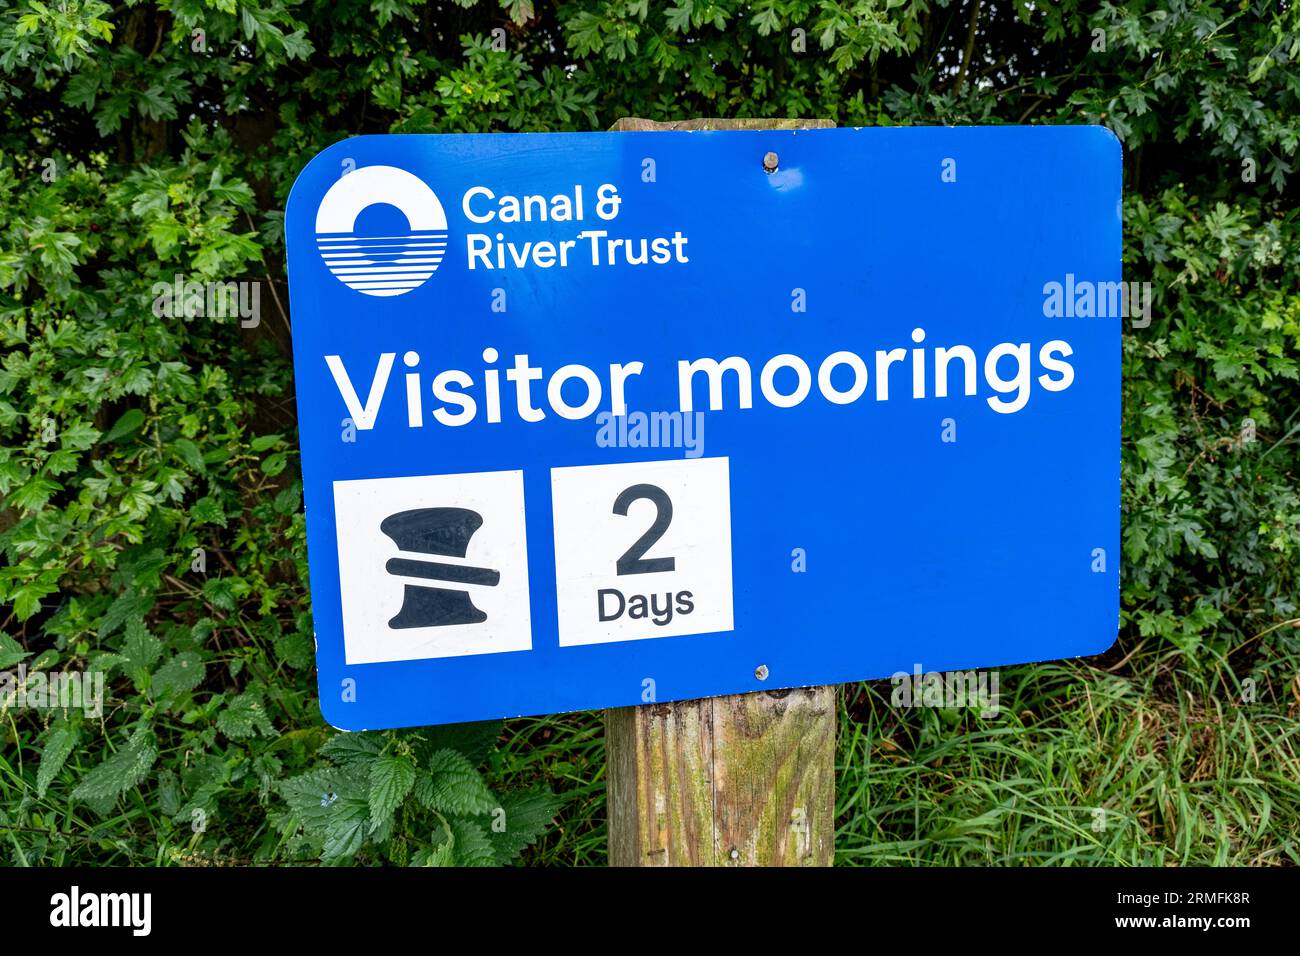 Enseigne Canal & River Trust, 2 jours d'amarrage des visiteurs à Wheelock près de Sandbach Cheshire UK Banque D'Images